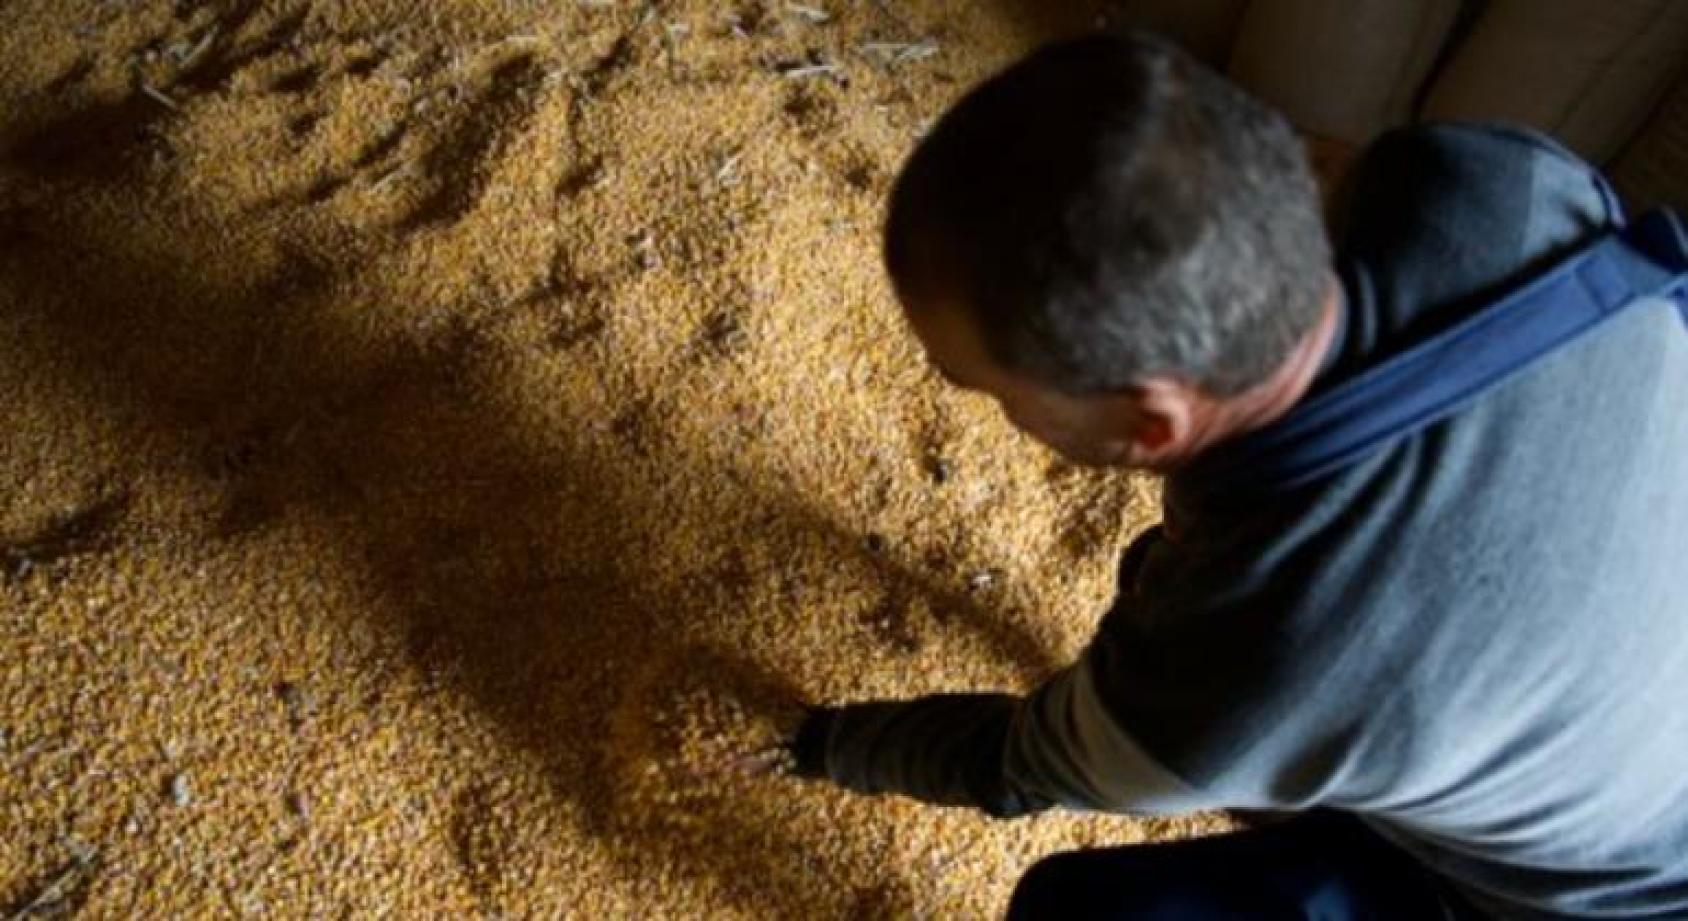 Взгляд с высоты на затылок мужчины, трогающего зерно на полу зернохранилища